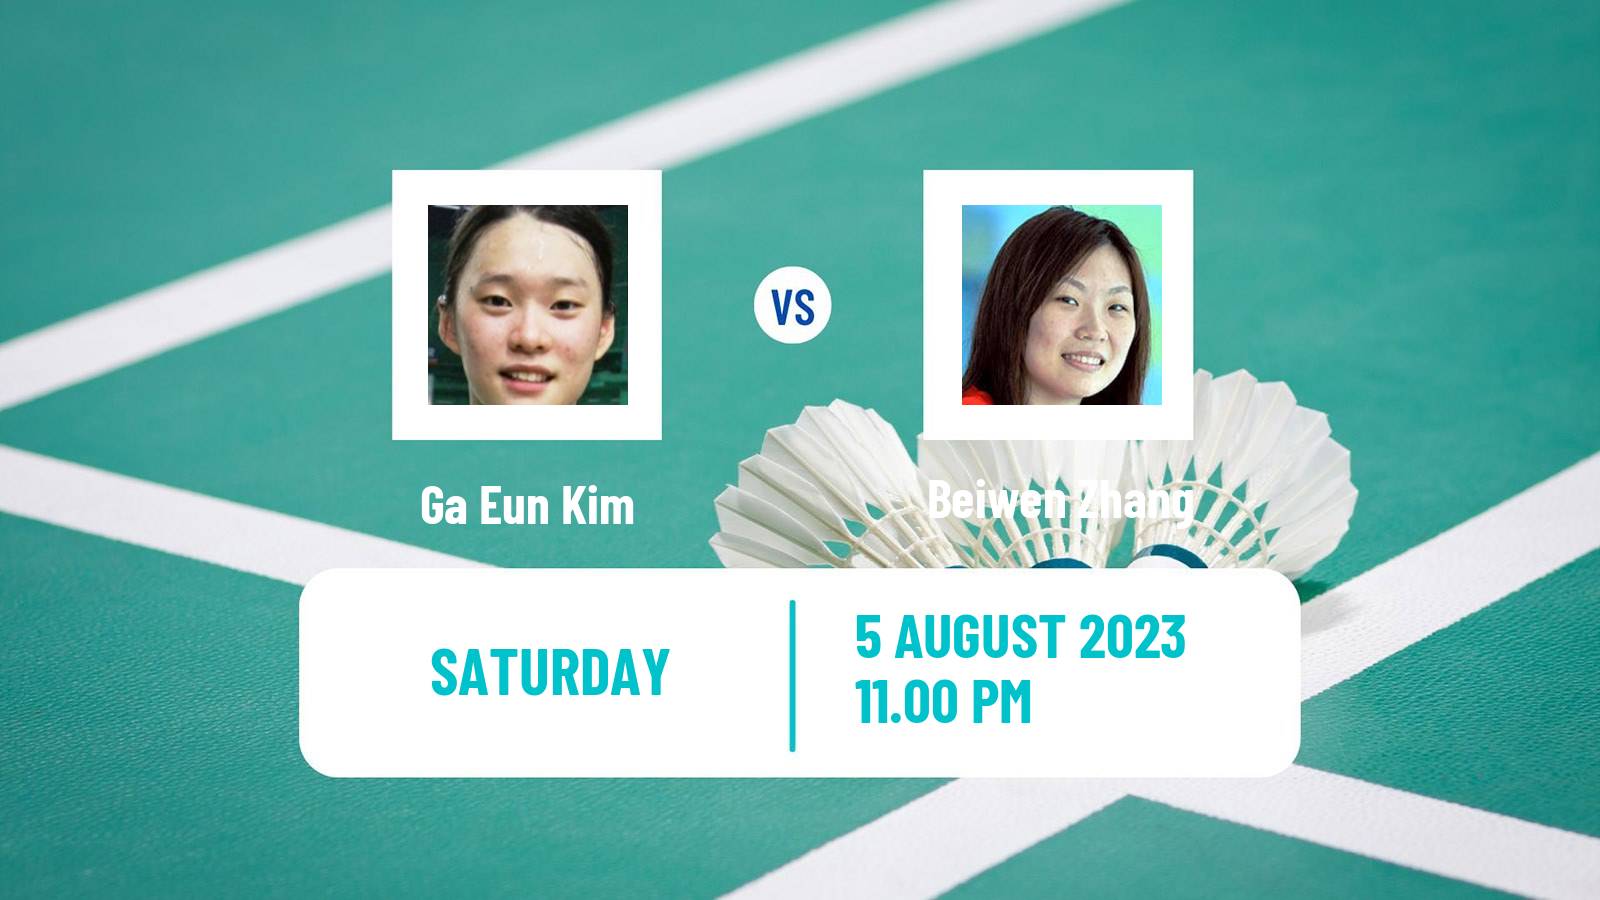 Badminton BWF World Tour Australian Open Women Ga Eun Kim - Beiwen Zhang